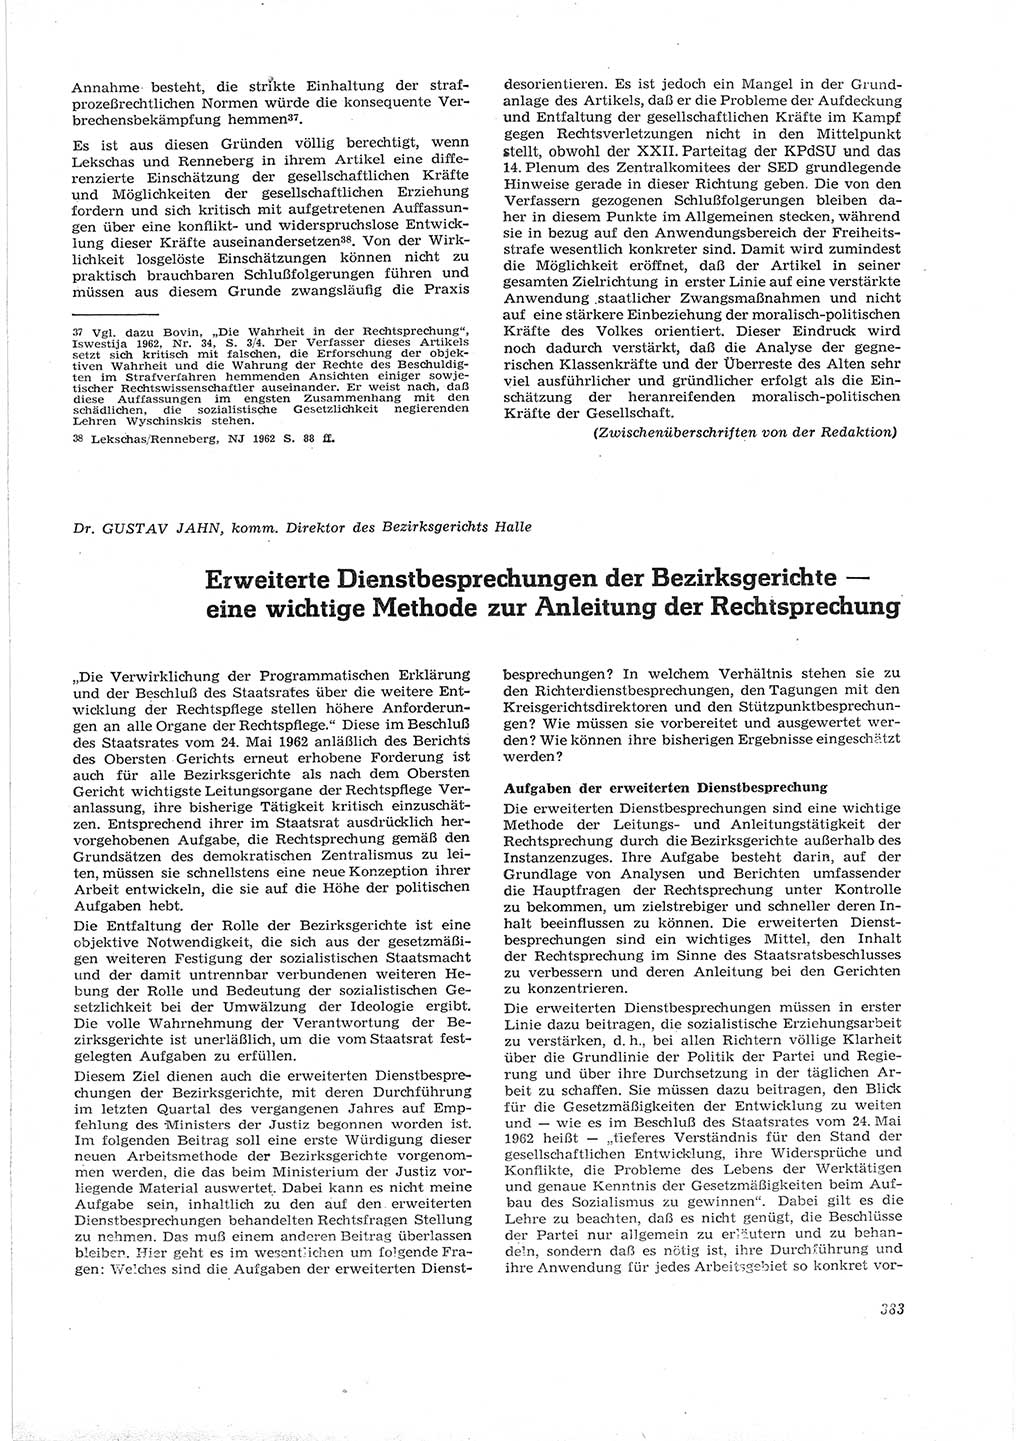 Neue Justiz (NJ), Zeitschrift für Recht und Rechtswissenschaft [Deutsche Demokratische Republik (DDR)], 16. Jahrgang 1962, Seite 383 (NJ DDR 1962, S. 383)